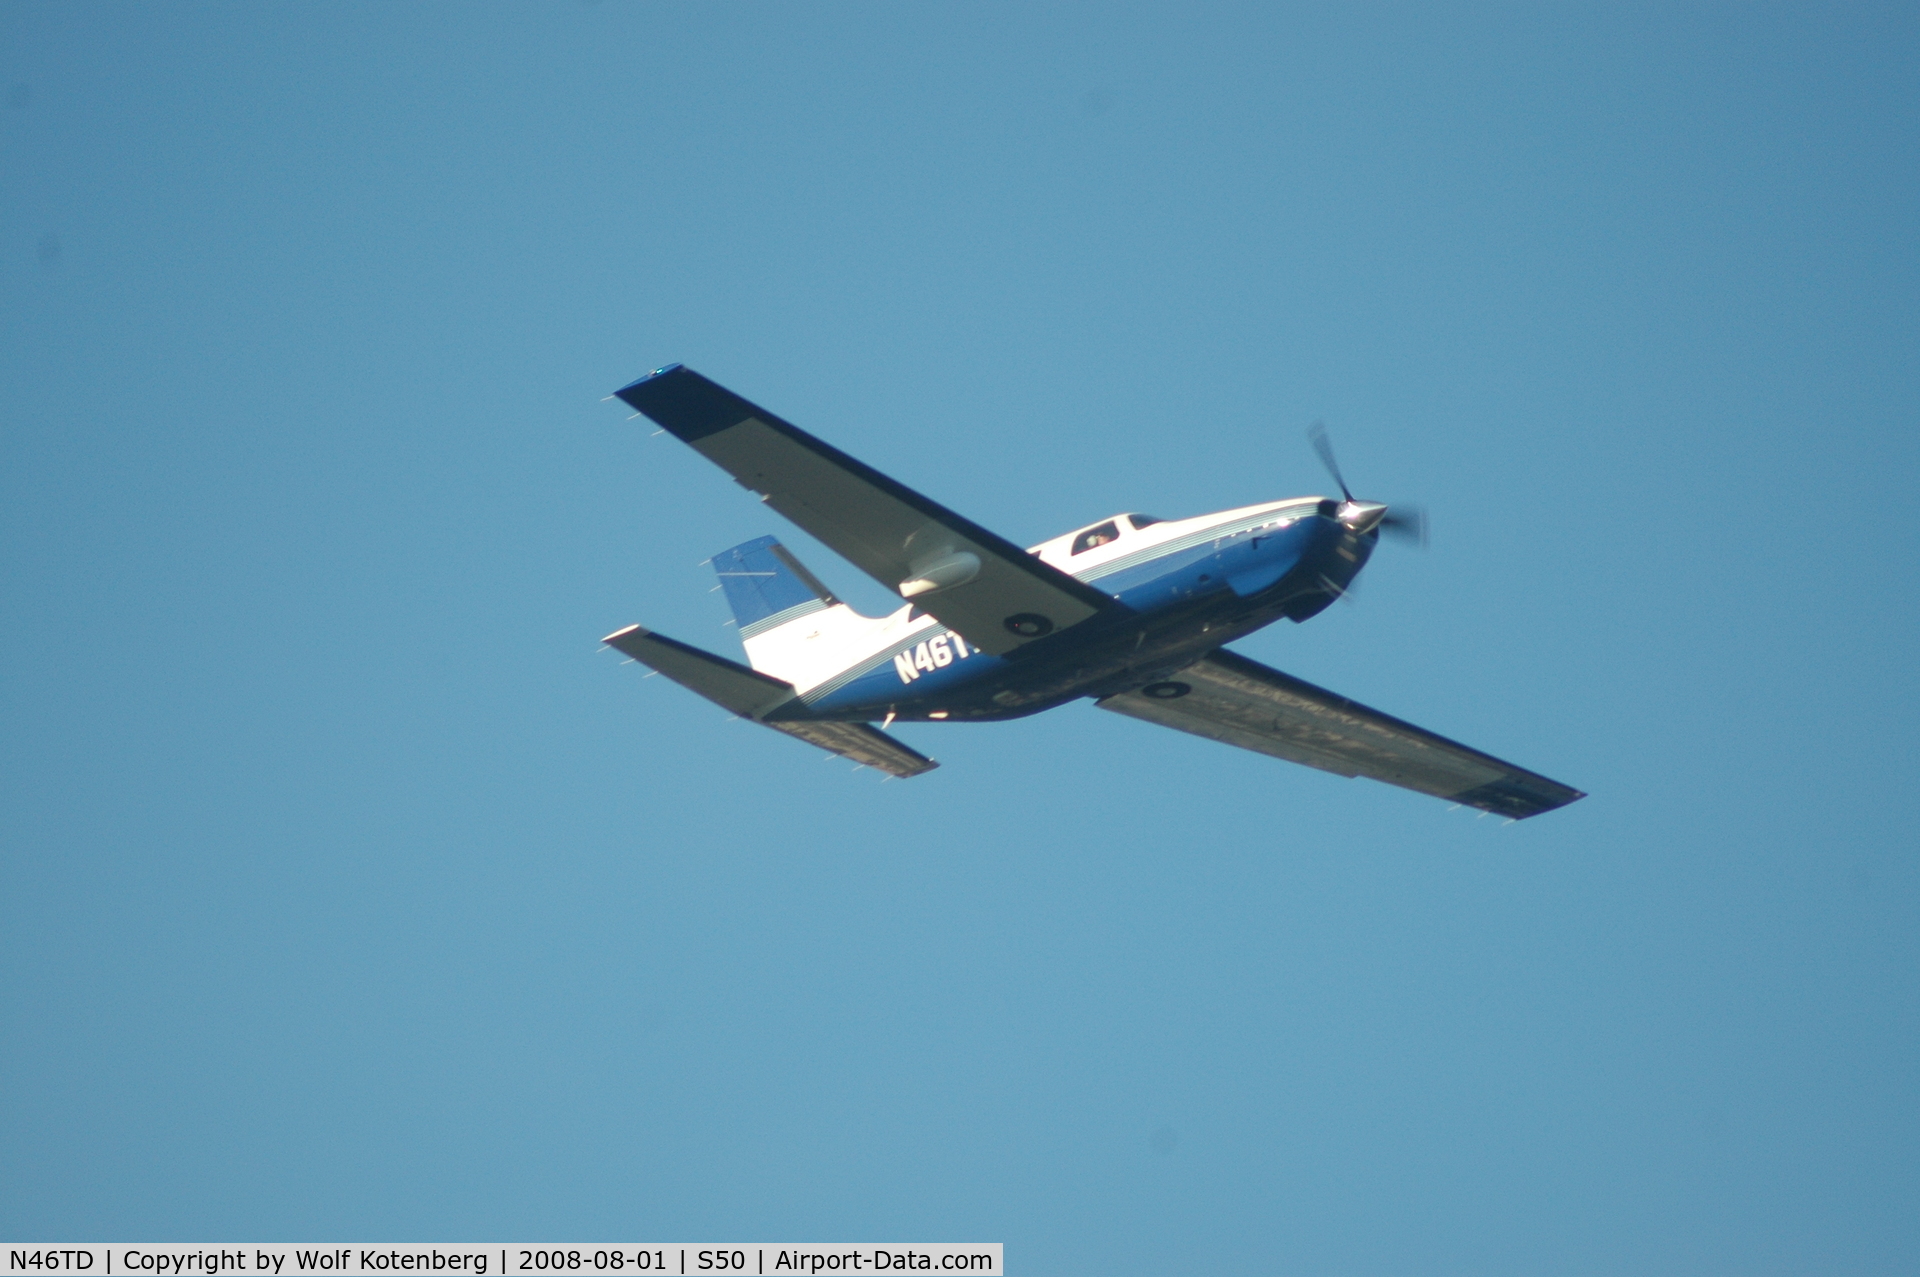 N46TD, 1998 Piper PA-46-350P Malibu Mirage C/N 4636177, Taking off and headin' east